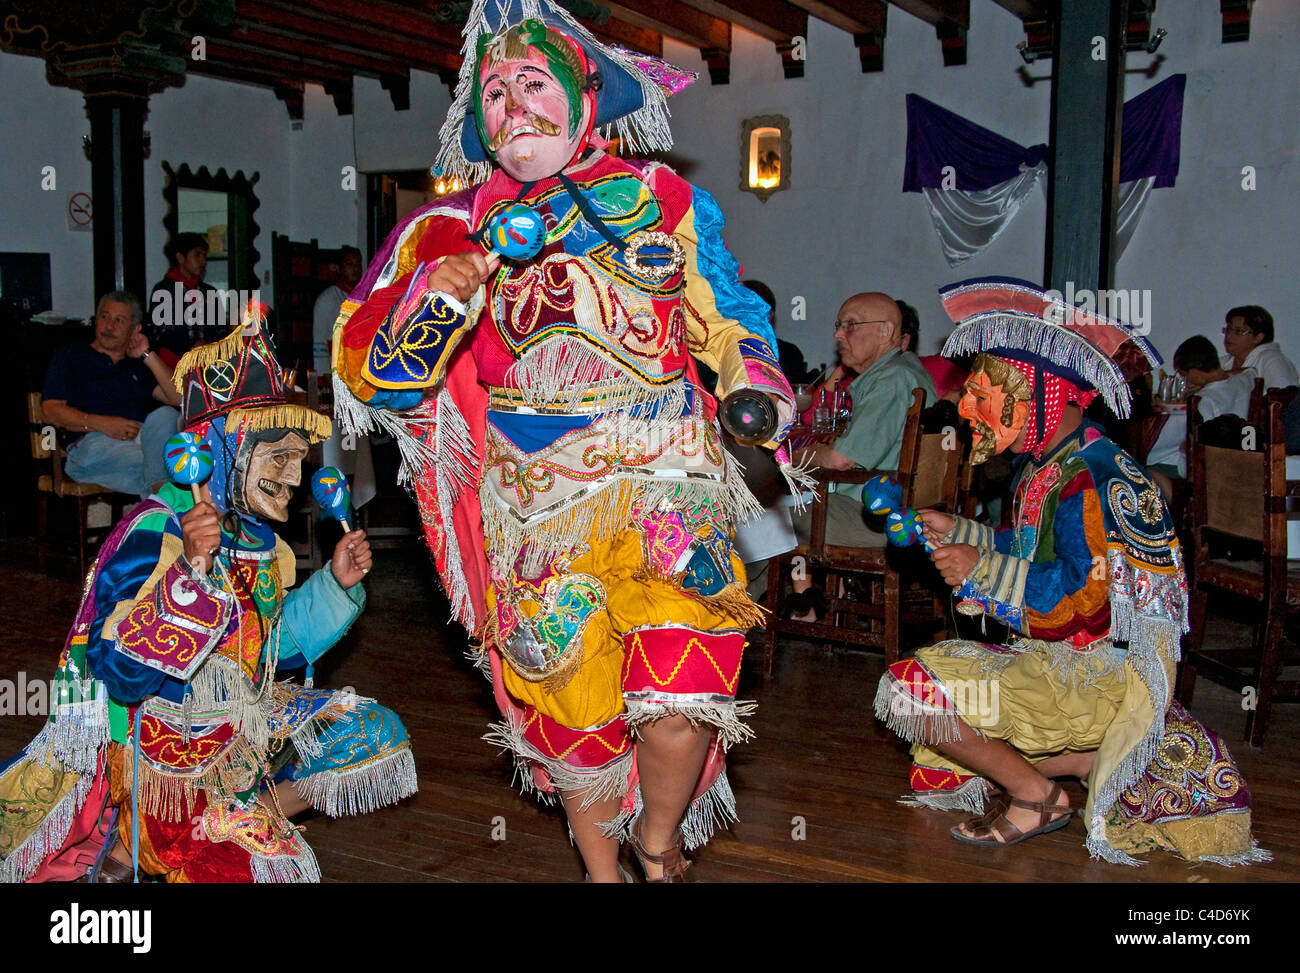 Les danseurs folkloriques maya en restaurant l'exécution de cérémonie qui se moquaient d'Espagnols et d'autres Européens. Banque D'Images